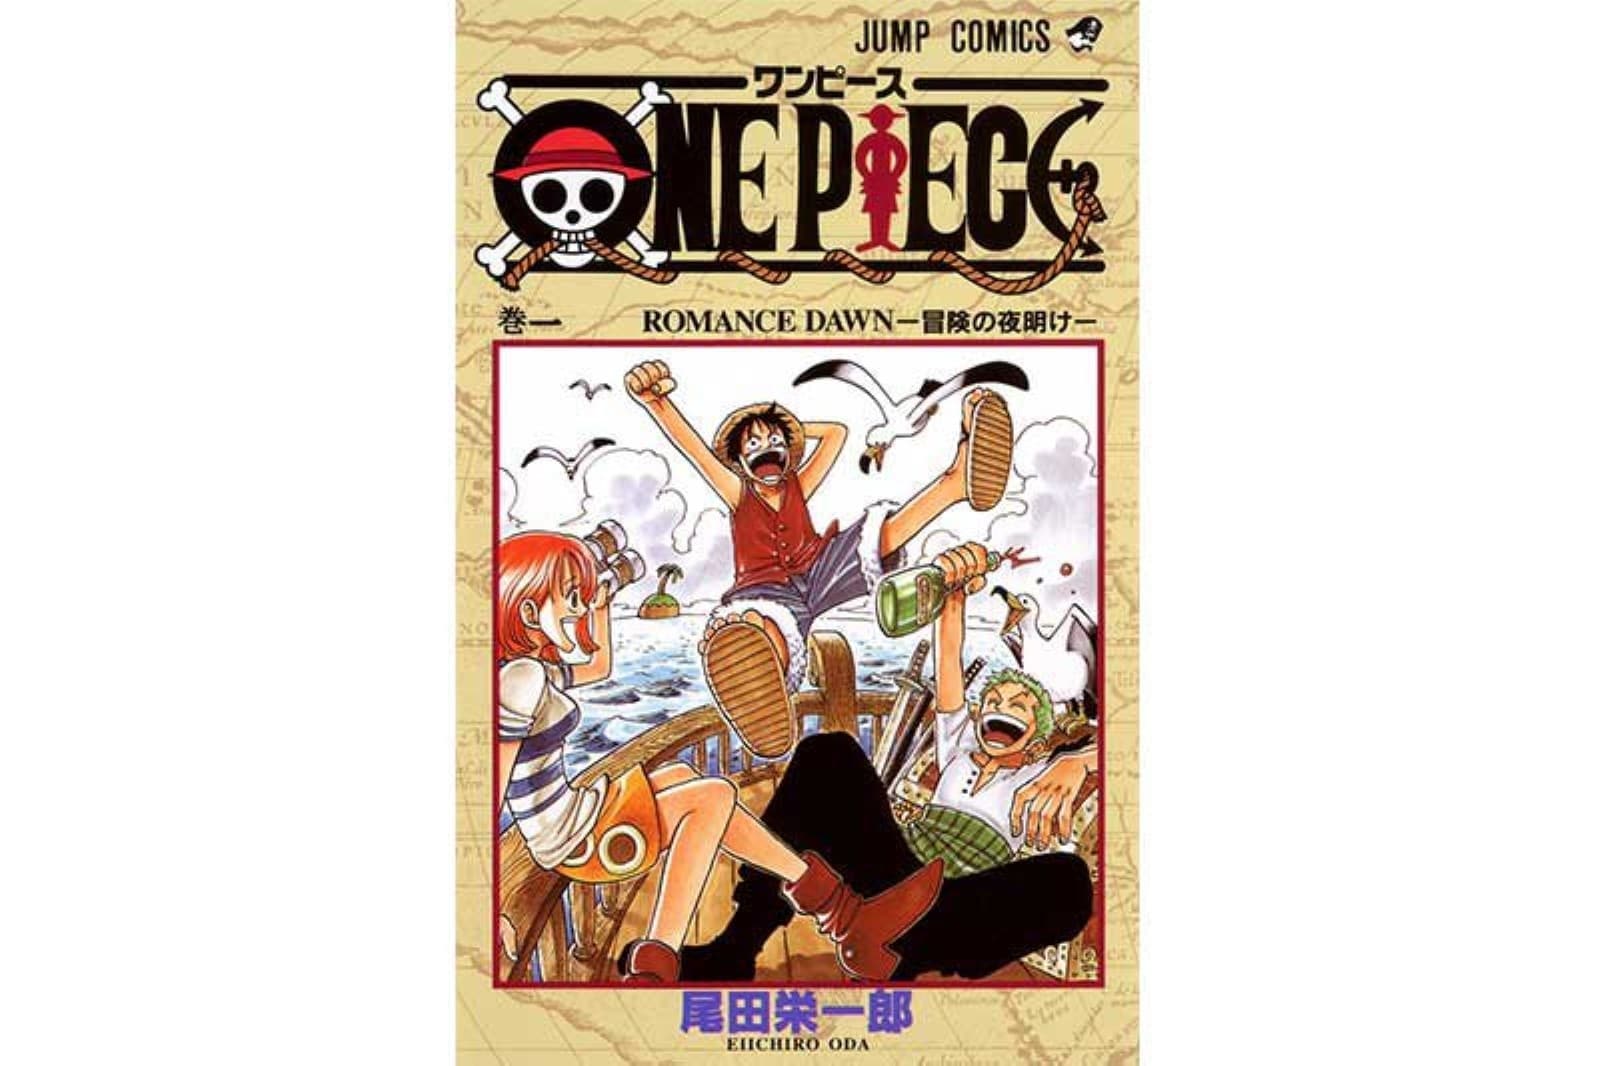 ファンが選んだ One Piece で好きなシリーズランキング すべての始まり 東の海編 を抑えた1位は All About News